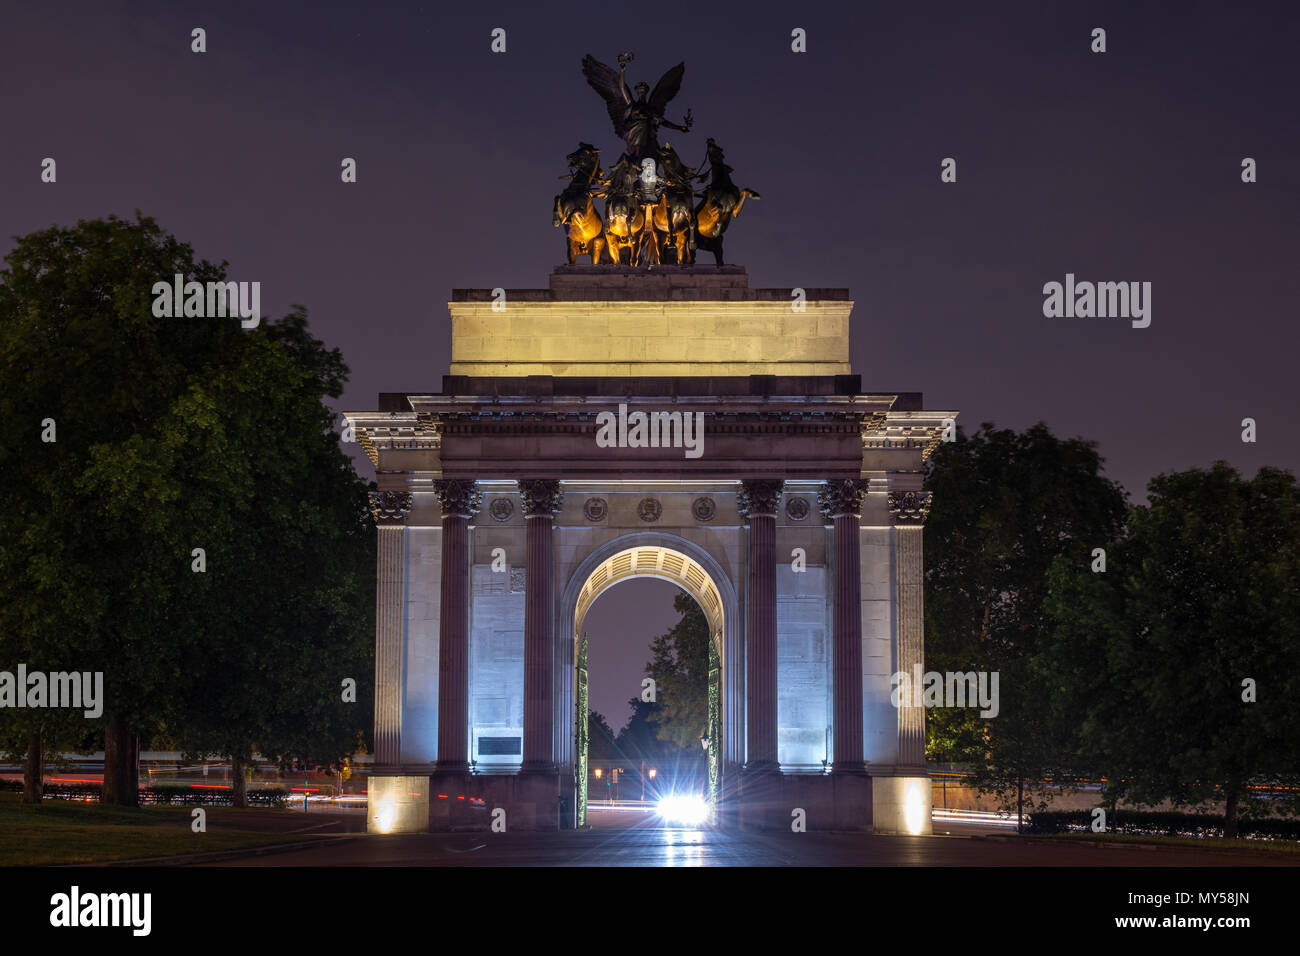 London, England, Großbritannien - 1. Juni 2018: Die triumphale Wellington Arch am Kopf der Constitution Hill am Hyde Park Corner in London ist in der Nacht beleuchtet. Stockfoto